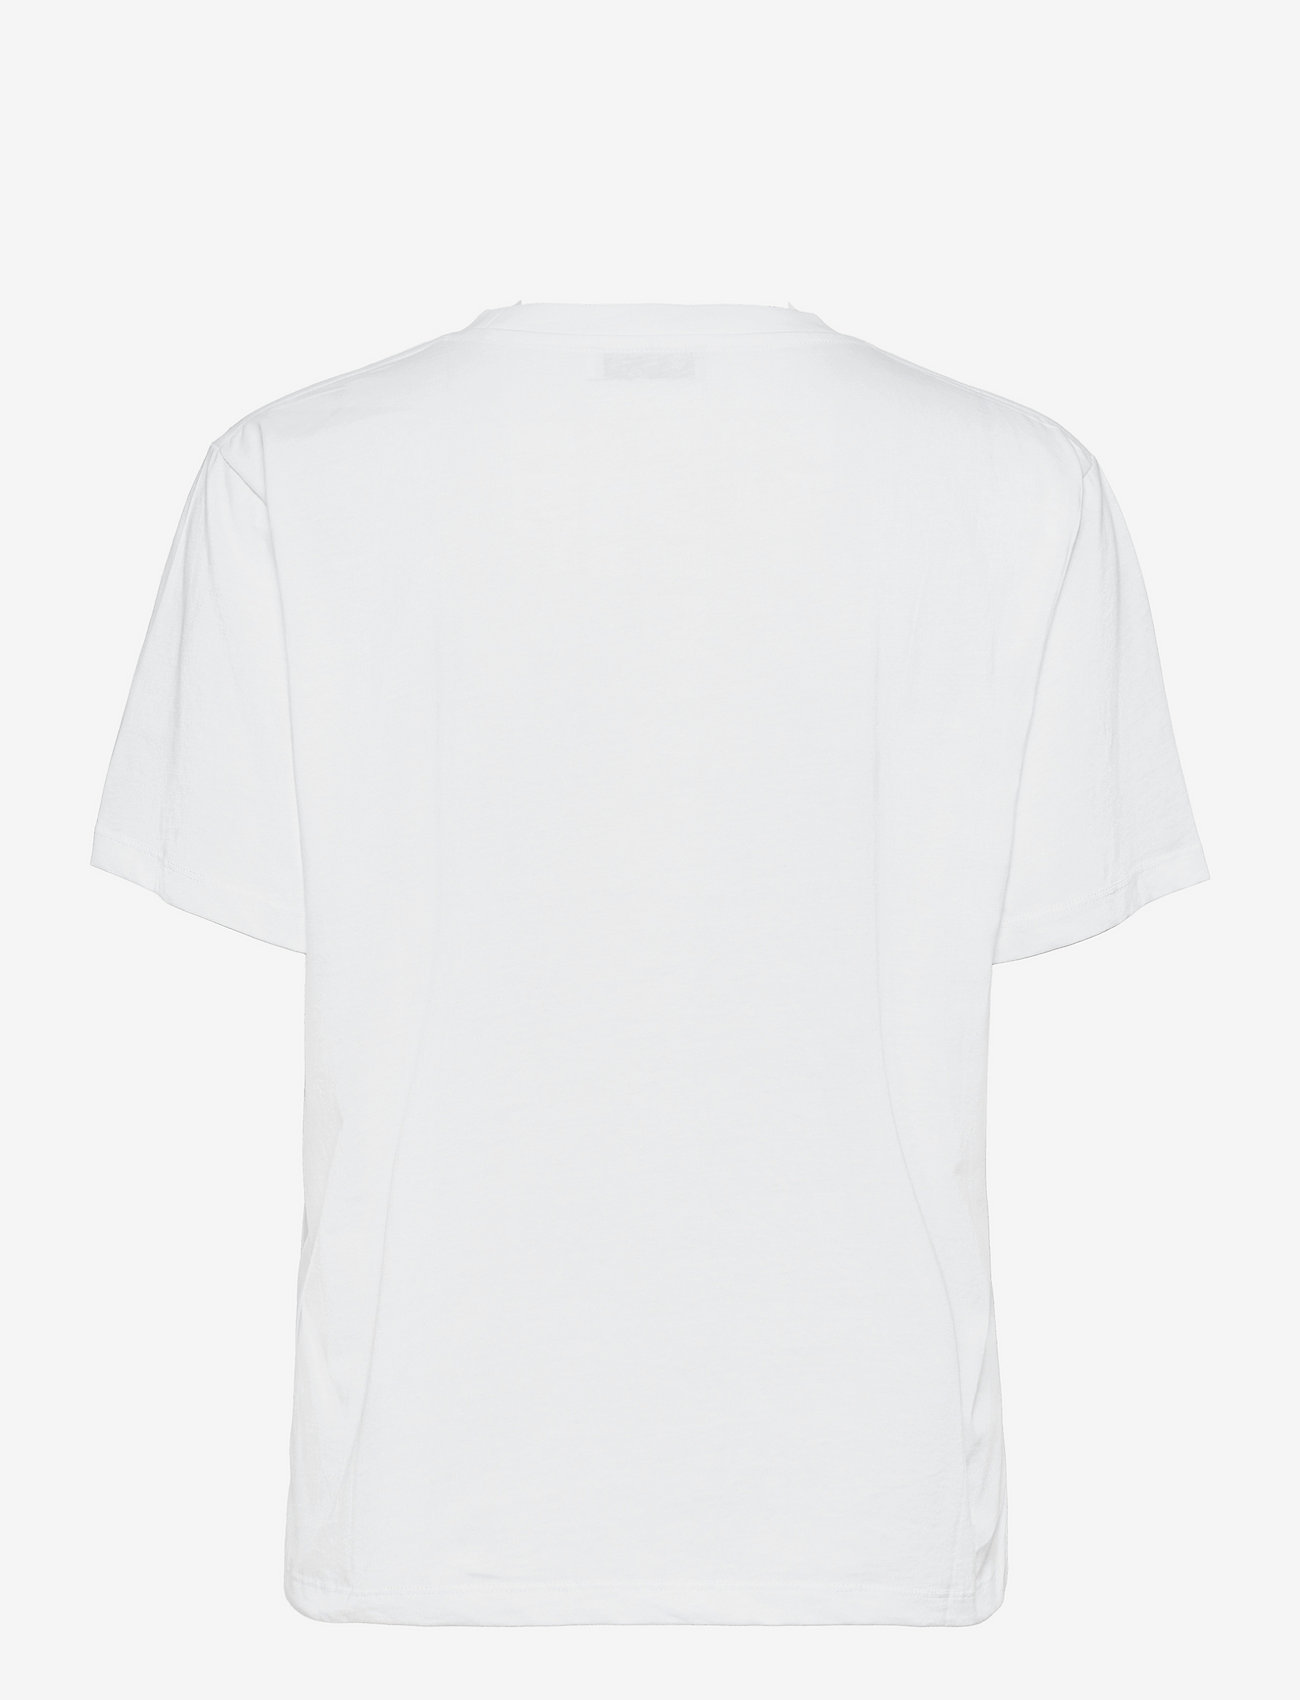 RODEBJER - RODEBJER TURIYA PAPERLOGO - t-shirts - white - 1